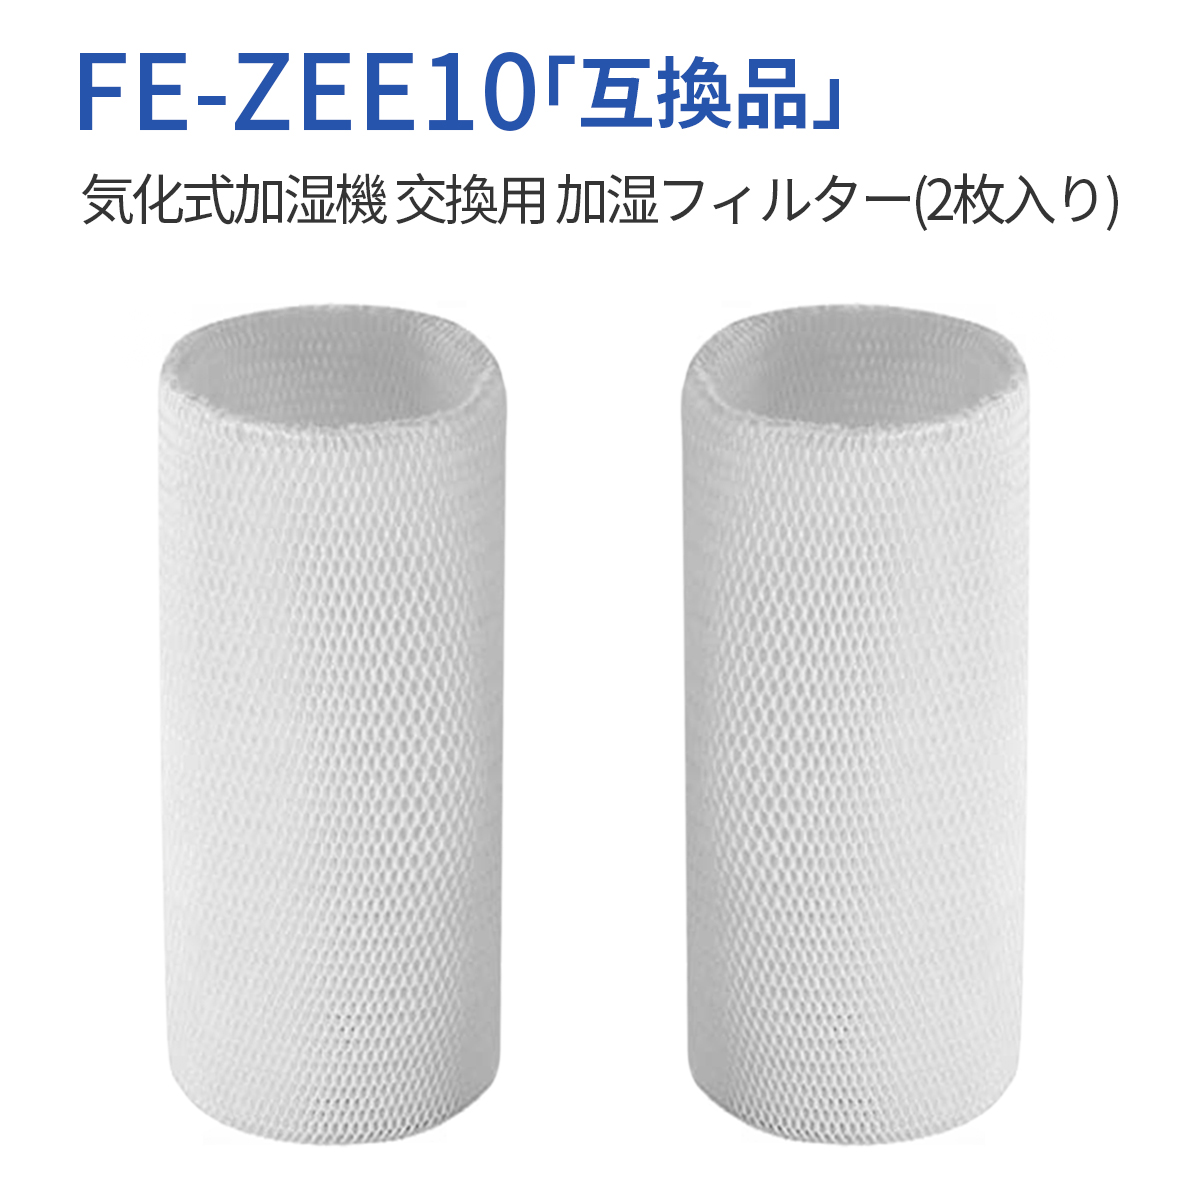 互換品 加湿フィルター fe-zee10 加湿器 フィルター FE-ZEE10 パナソニック気化式加湿機